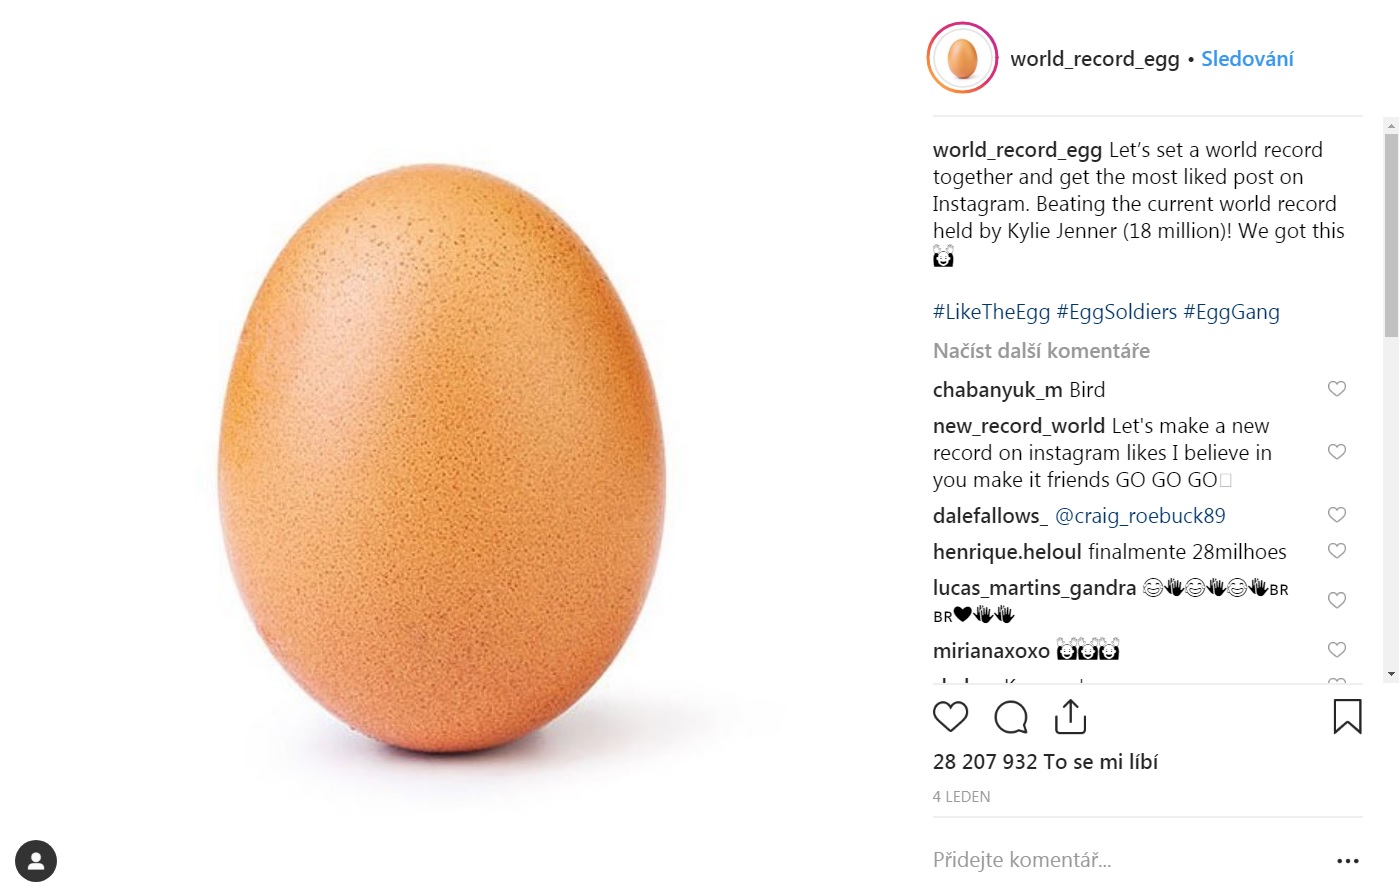 Jedno vejce přepsalo dějiny Instagramu.